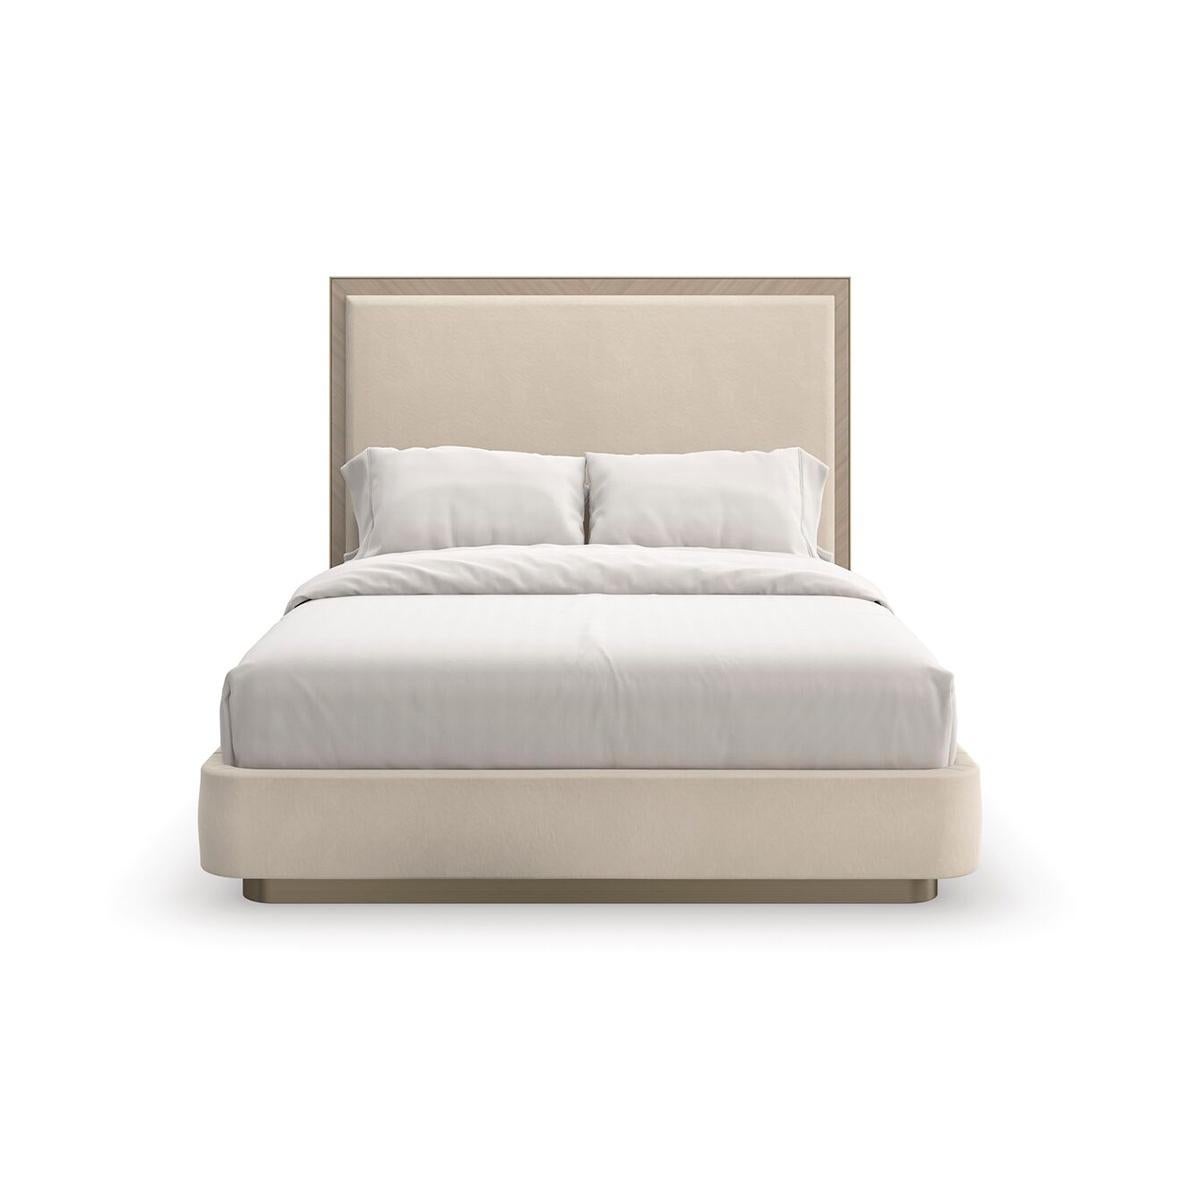 Dieses klassische Bett besticht durch eine beruhigende, neutrale Farbpalette, die warm und einladend wirkt. Das Kopfteil im Parsons-Stil ist mit einem weichen, aber strapazierfähigen, wollähnlichen Flanell bezogen und an allen drei Seiten mit